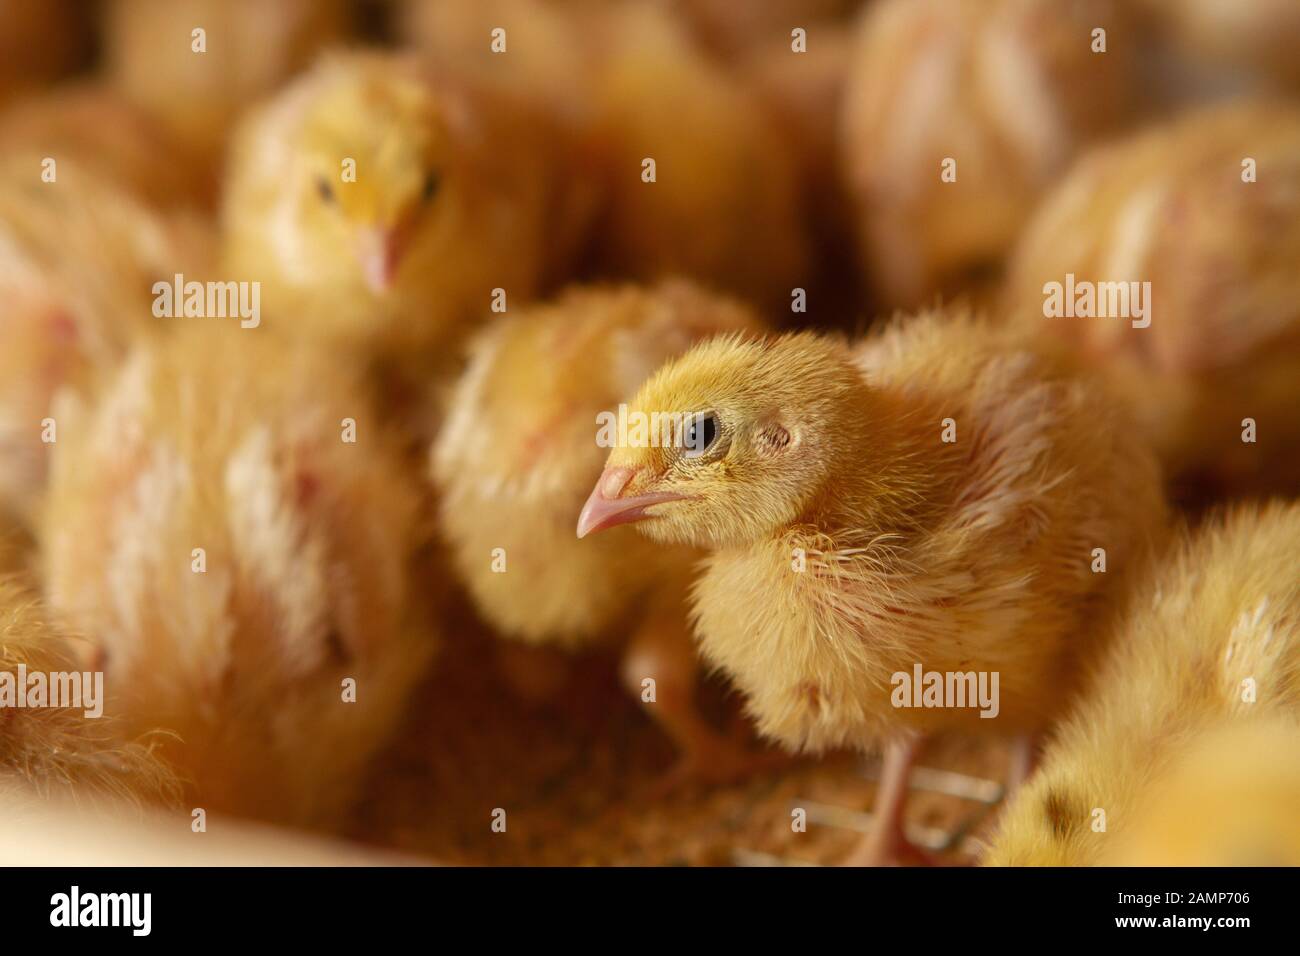 Fattoria di pollo al coperto, alimentazione di pollo, alimentazione di pollo alla graticola, alimentazione e mantenimento di polli alla quaglia Foto Stock